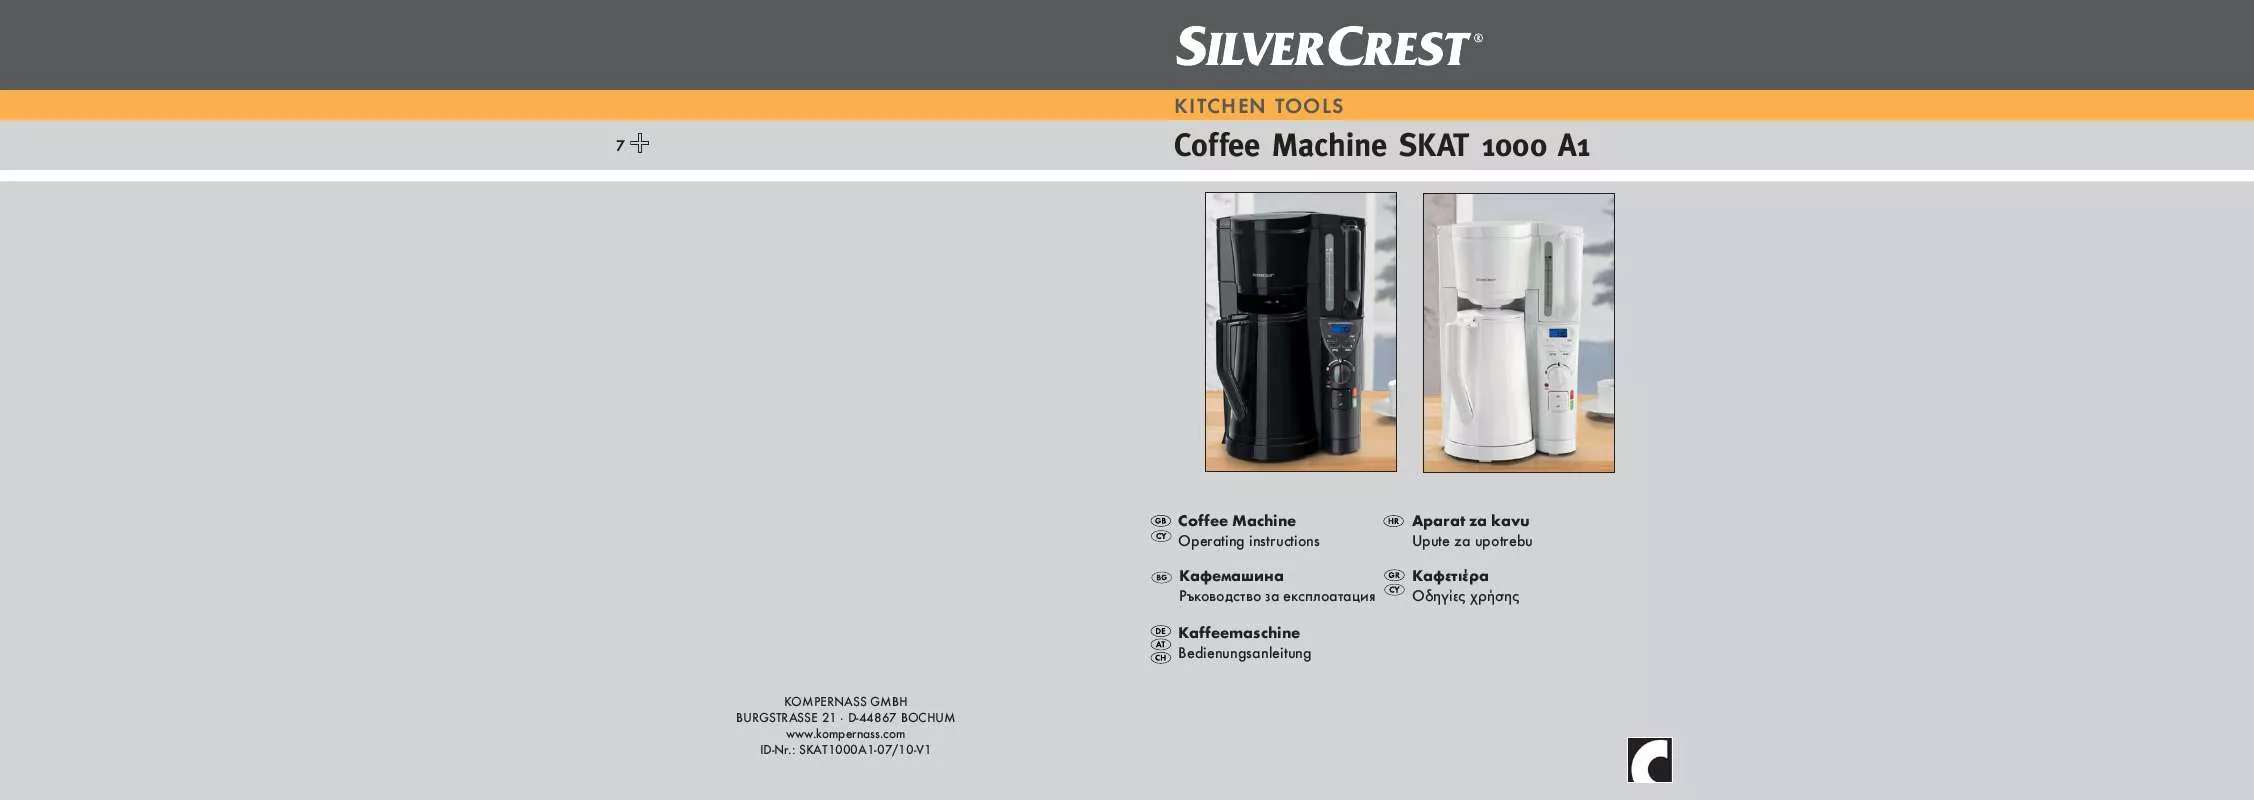 Mode d'emploi SILVERCREST SKAT 1000 A1 COFFEE MACHINE